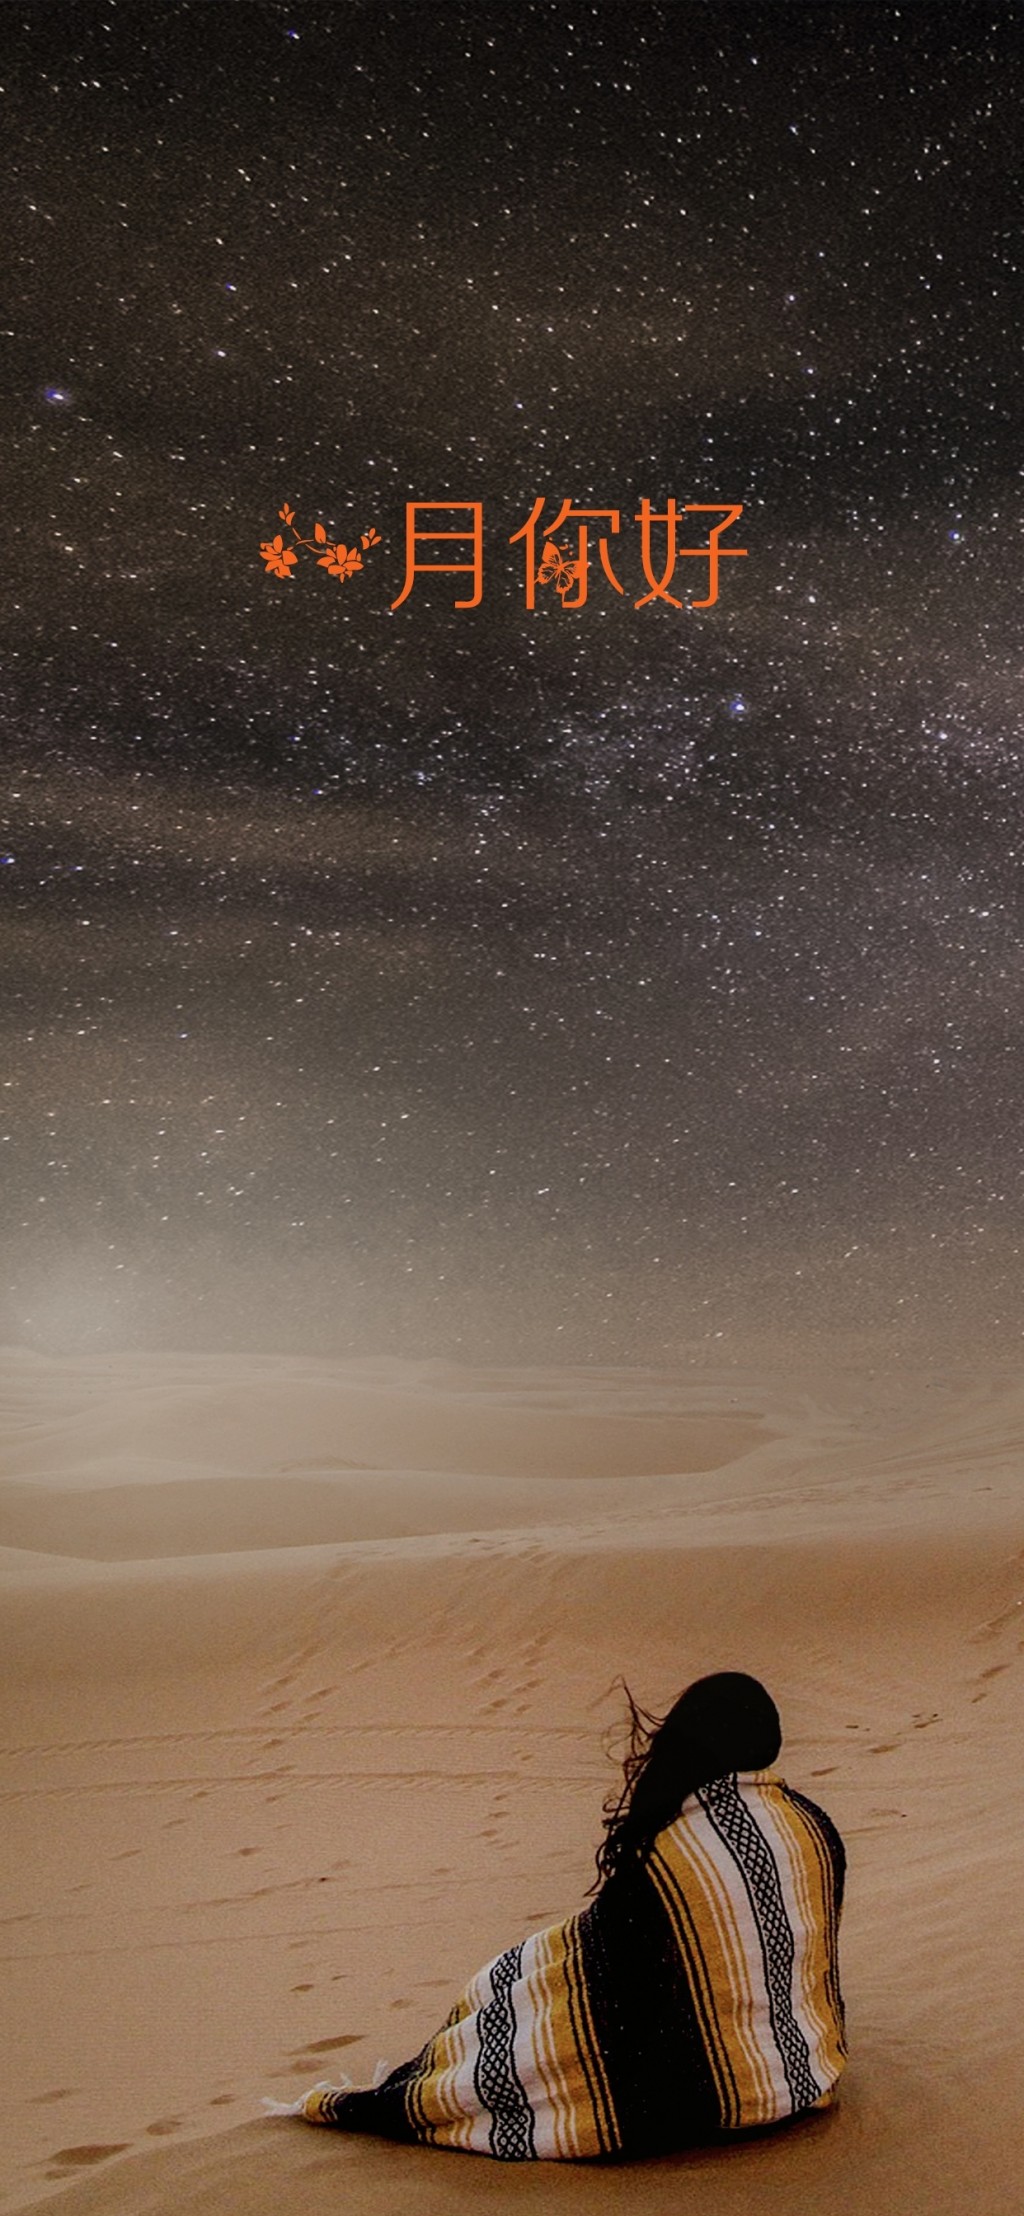 一月你好沙漠里的星空美景手机壁纸